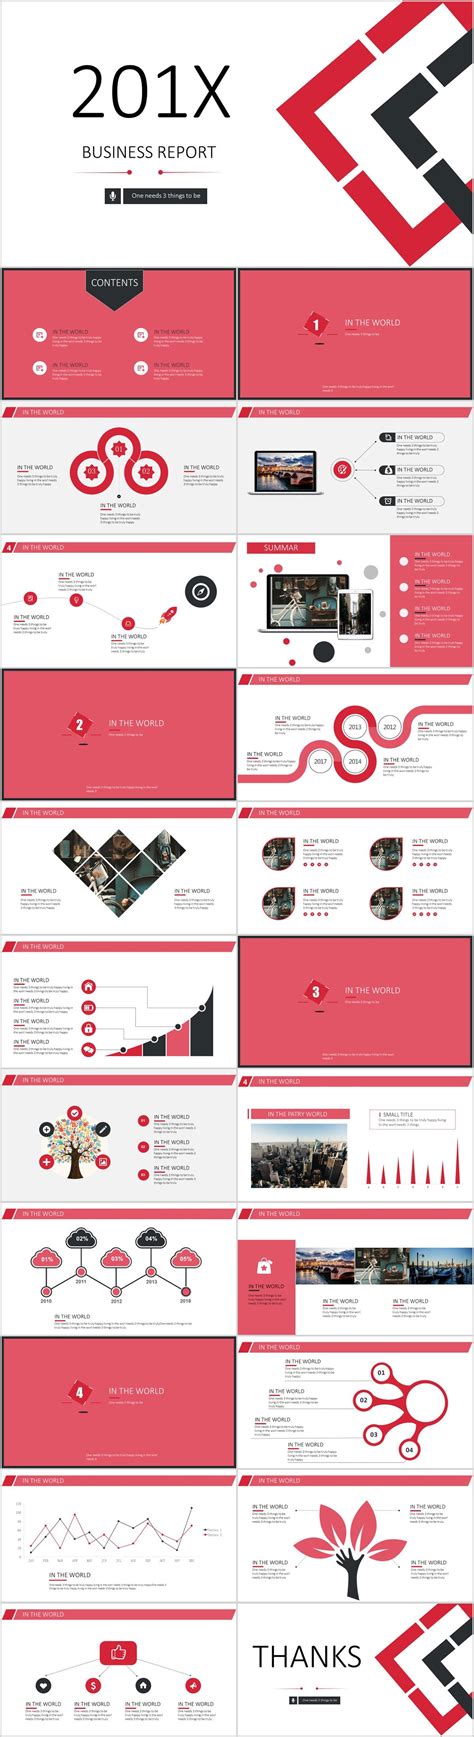 查看我的 Behance 项目“23 Red Business Report Powerpoint Templates”